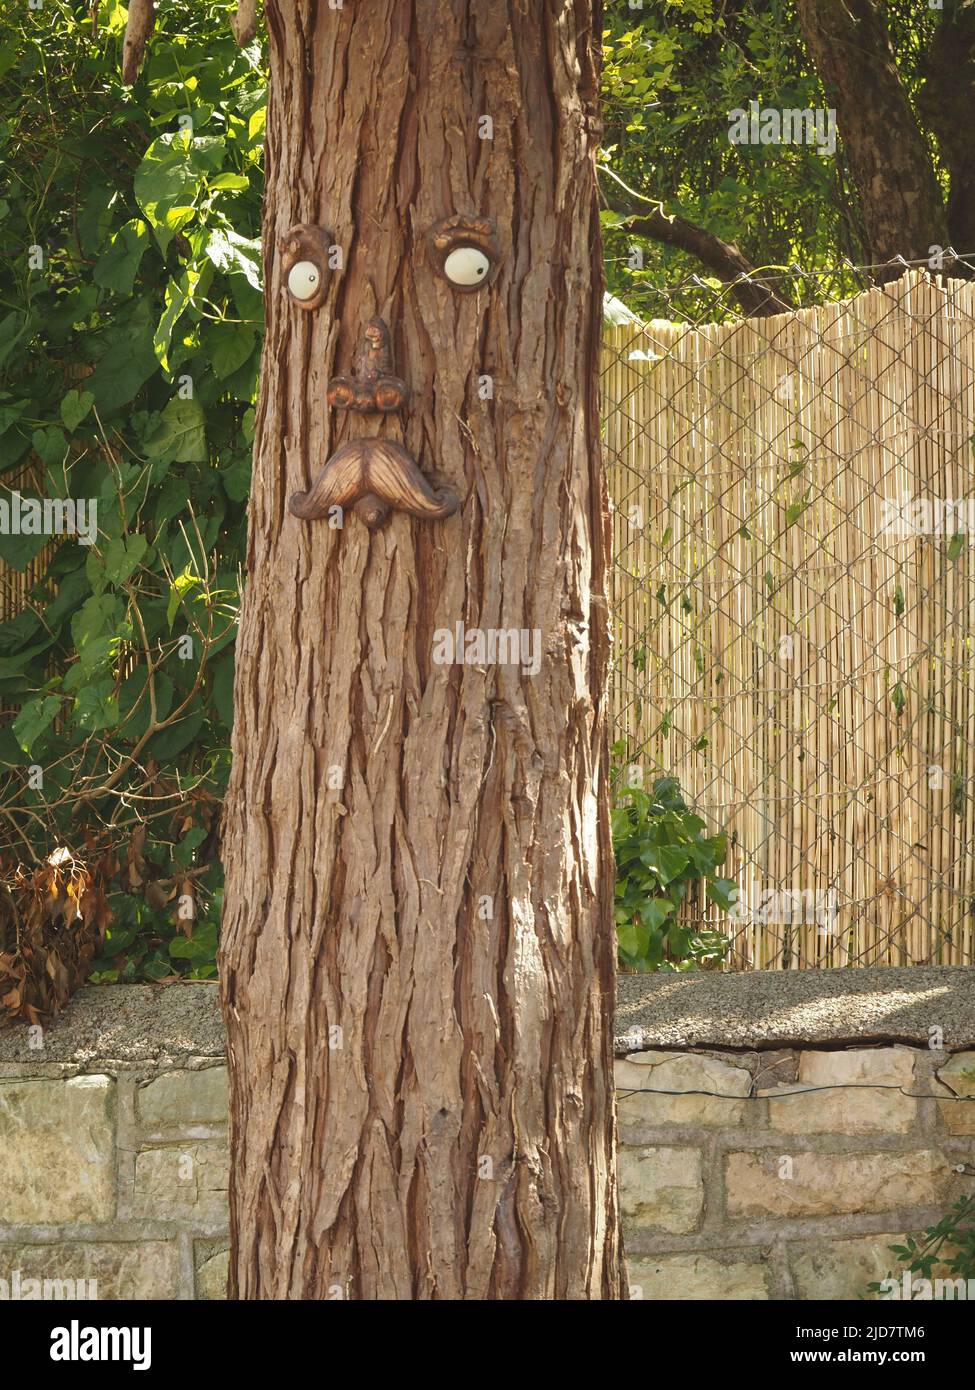 Sculpture de visage avec moustache sur tronc d'arbre à Radstock, Somerset. Banque D'Images